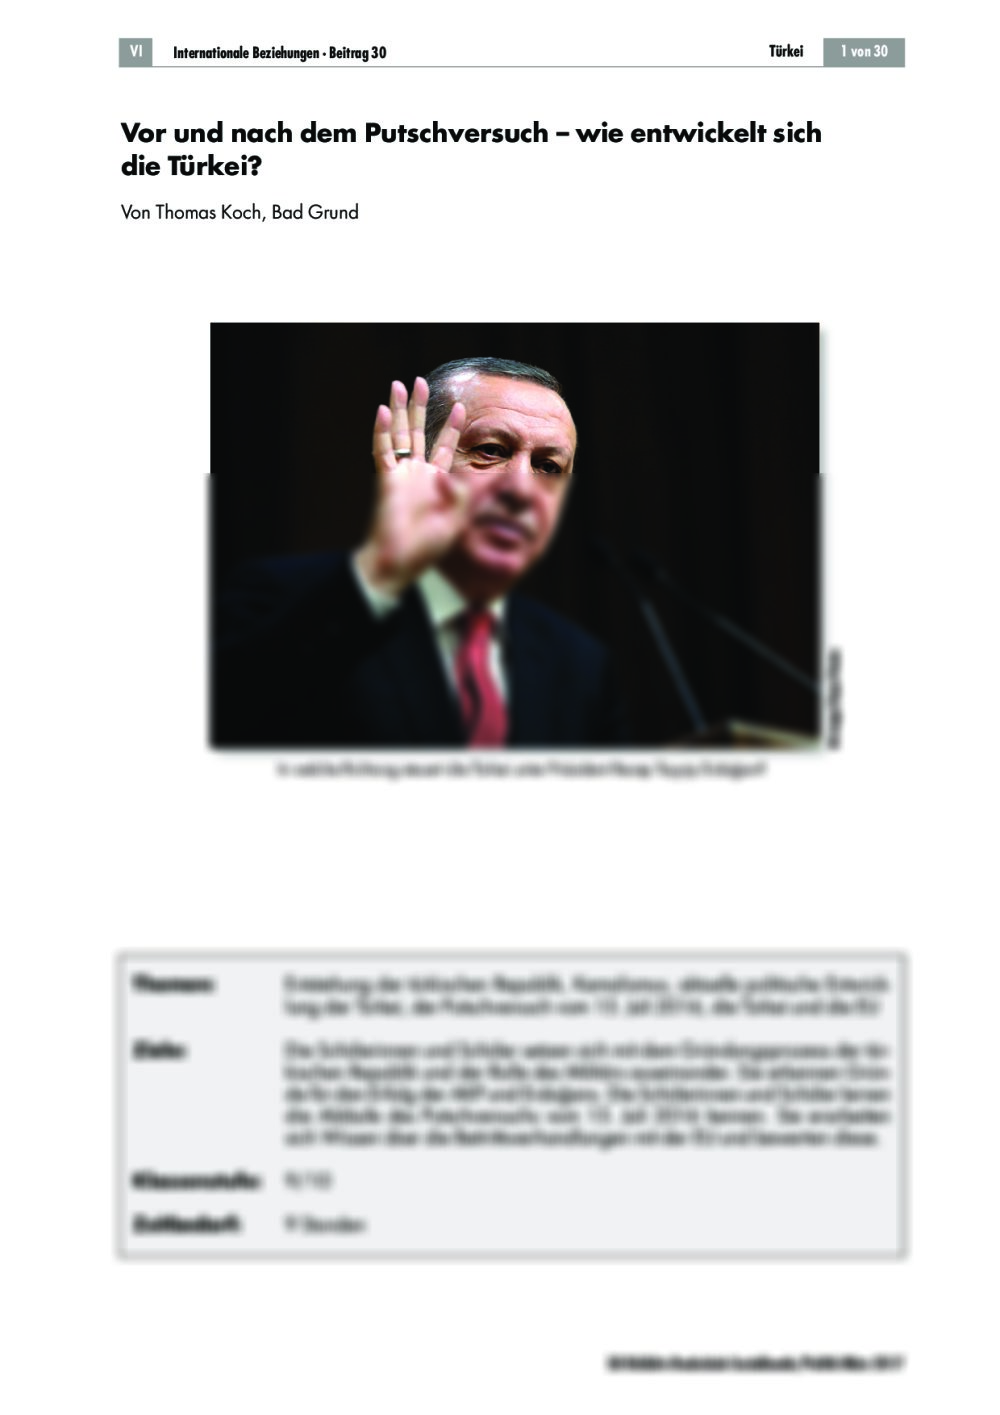 Wie entwickelt sich die Türkei? - Seite 1